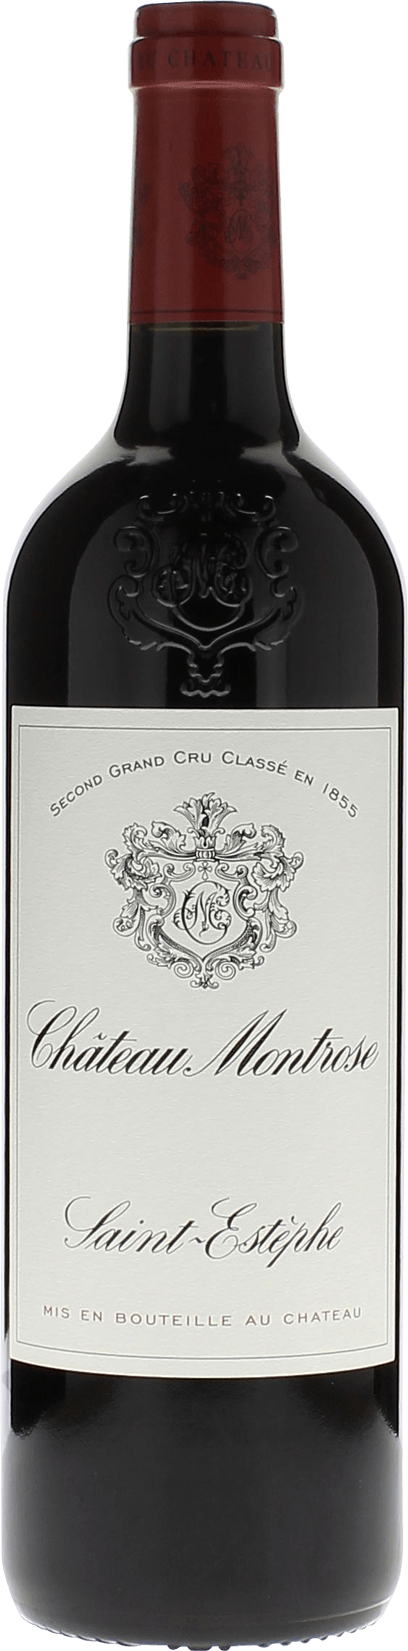 Montrose 2015 2me Grand cru class Saint-Estphe, Bordeaux rouge